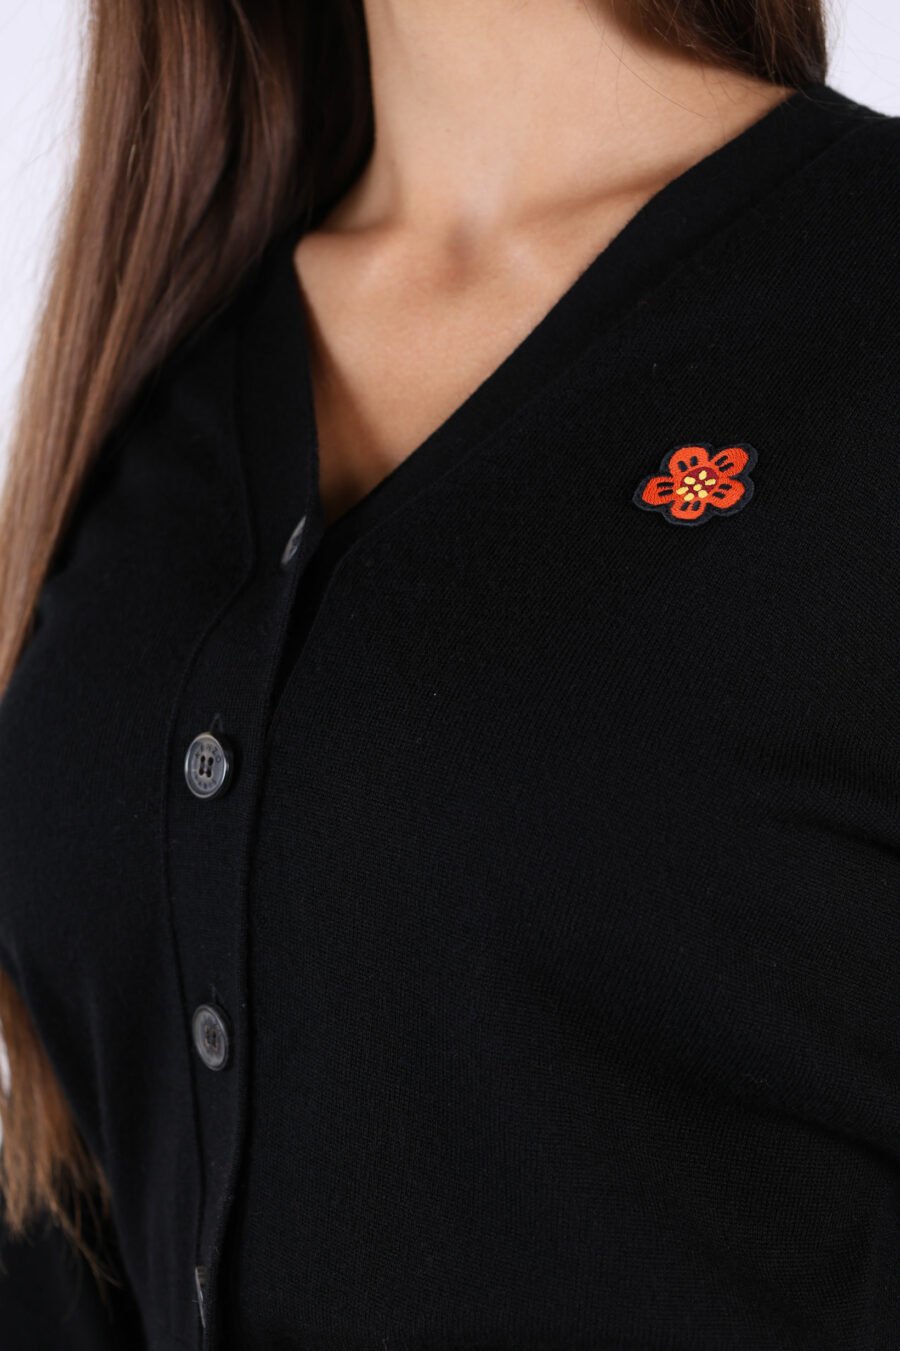 Black woollen jumper with mini-logo "boke flower" - 361223054662202132